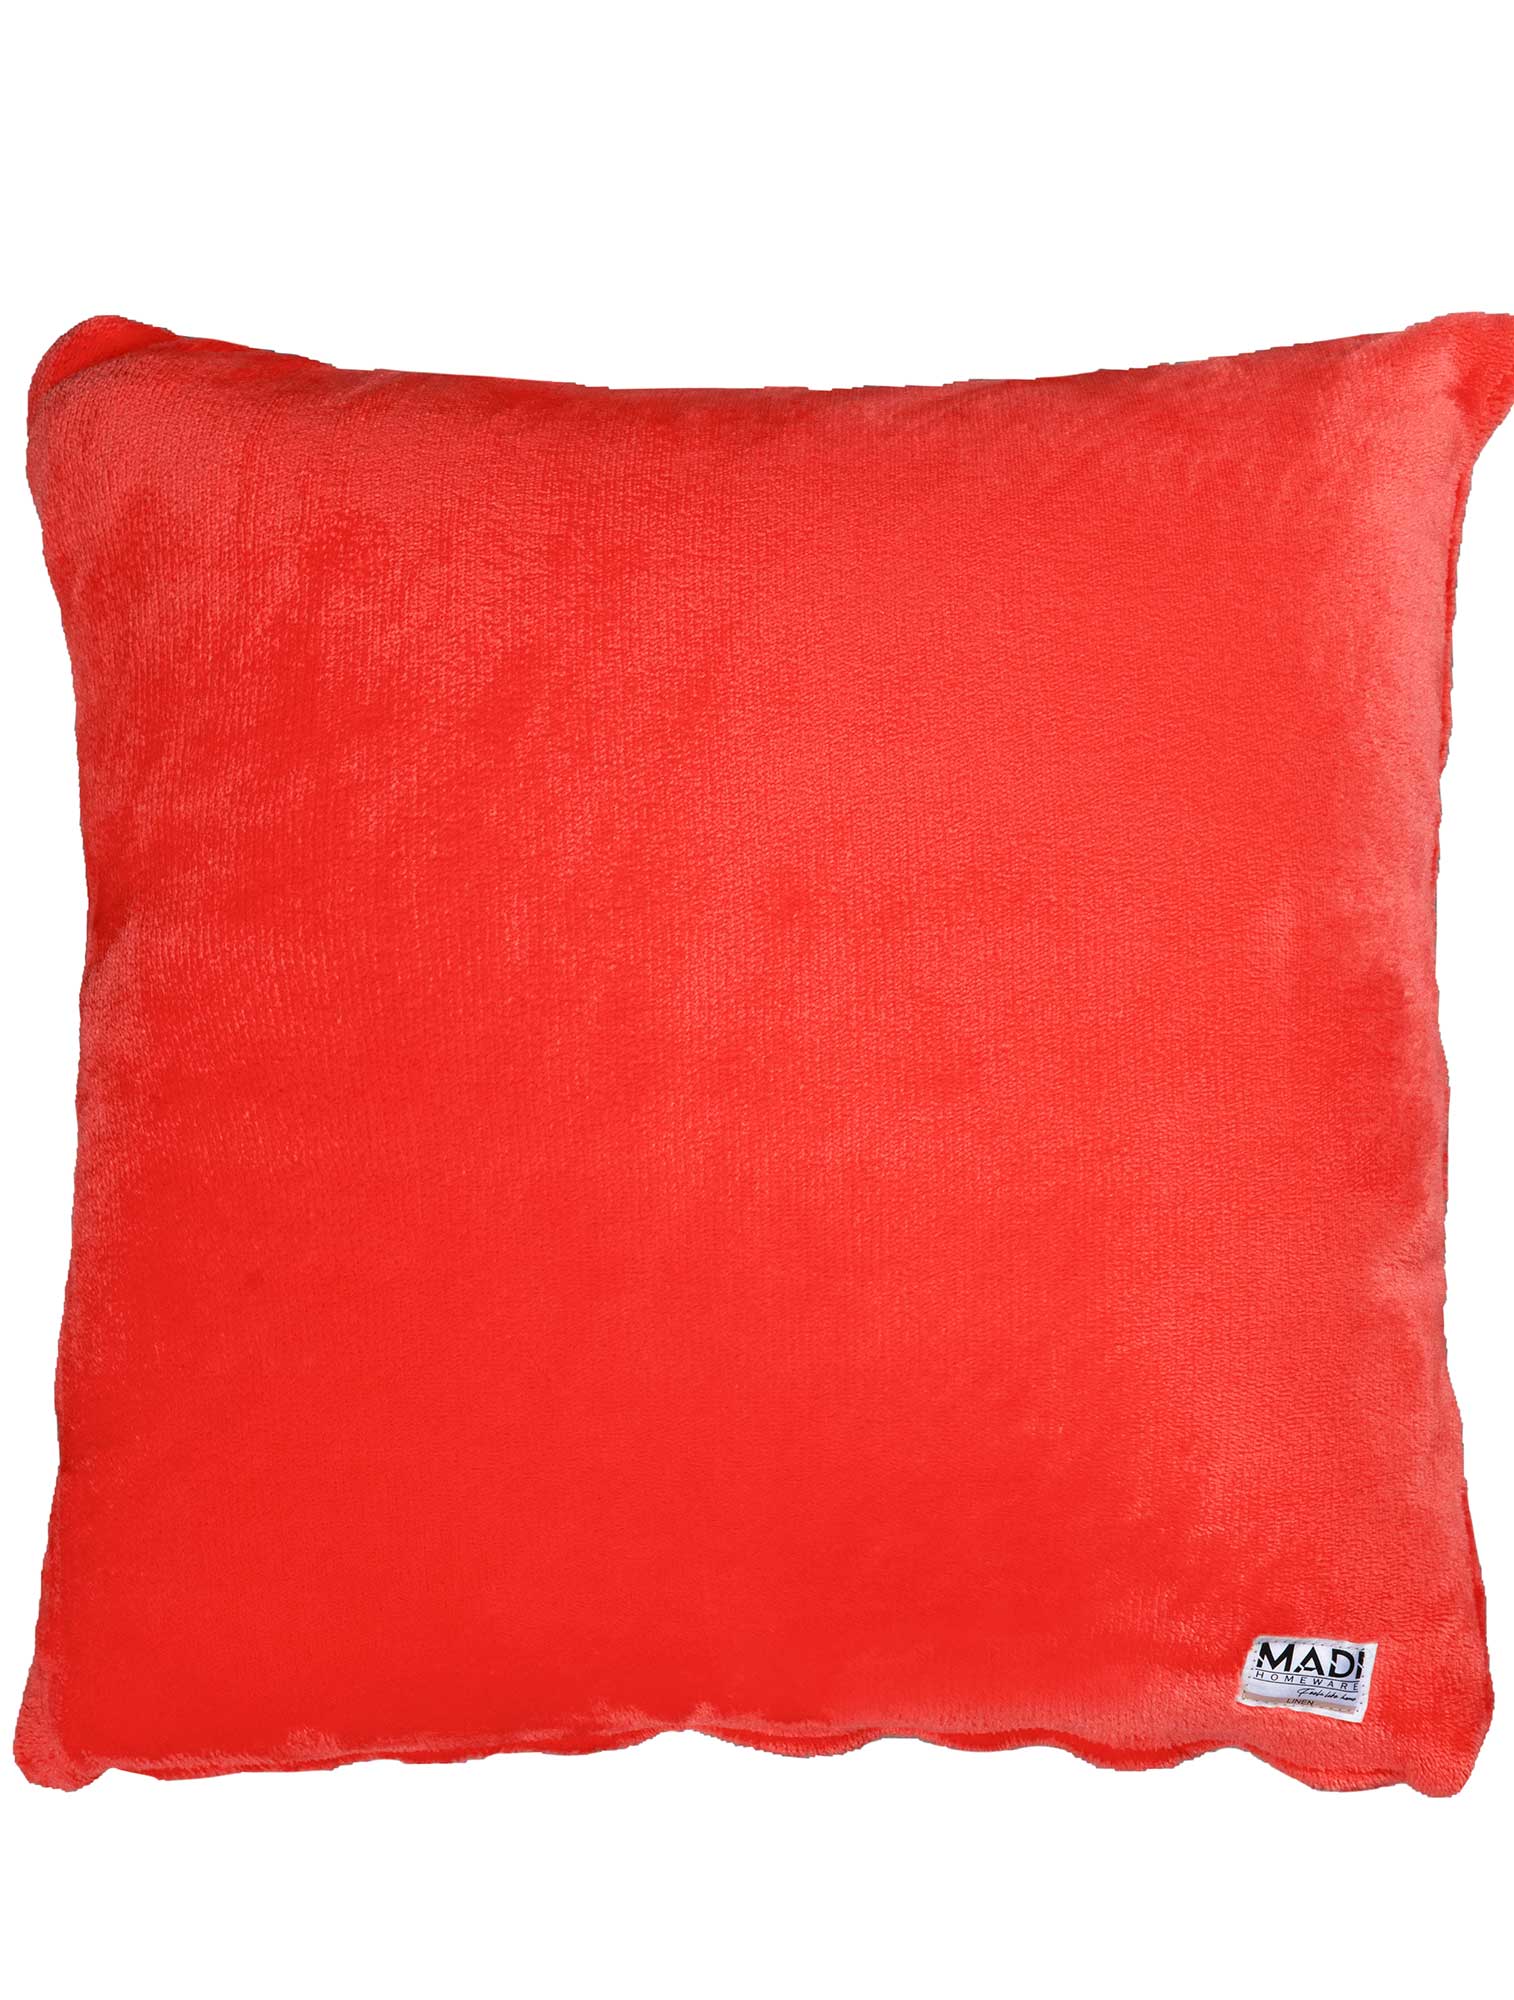 Διακοσμητικό Μαξιλάρι BASIS RED από την εταιρεία Madi